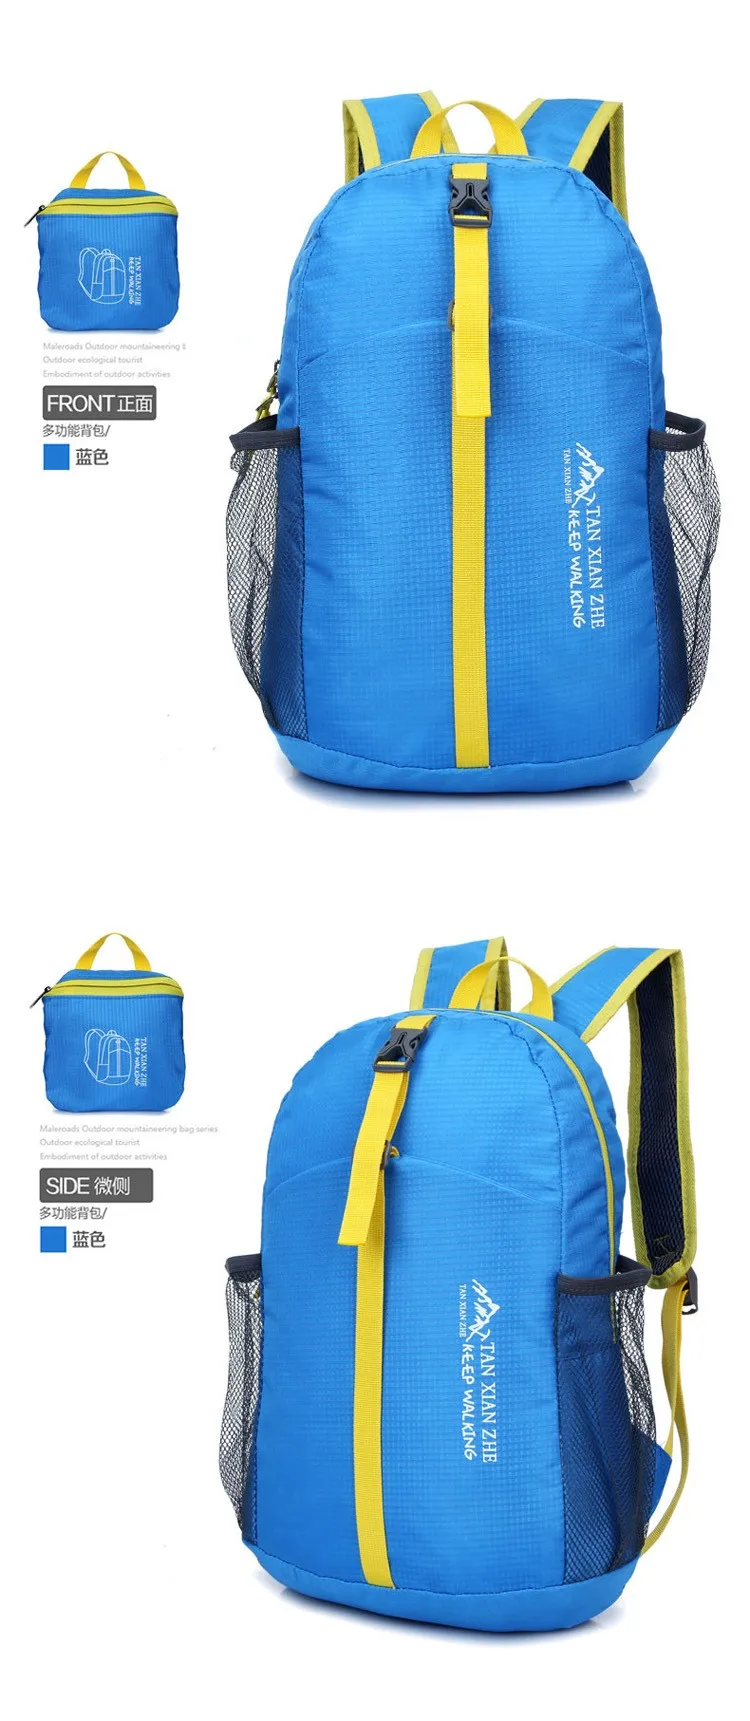 Совершенно новая спортивная сумка для спортзала Сверхлегкая складывающаяся уличная школьная сумка рюкзак(6 цветов